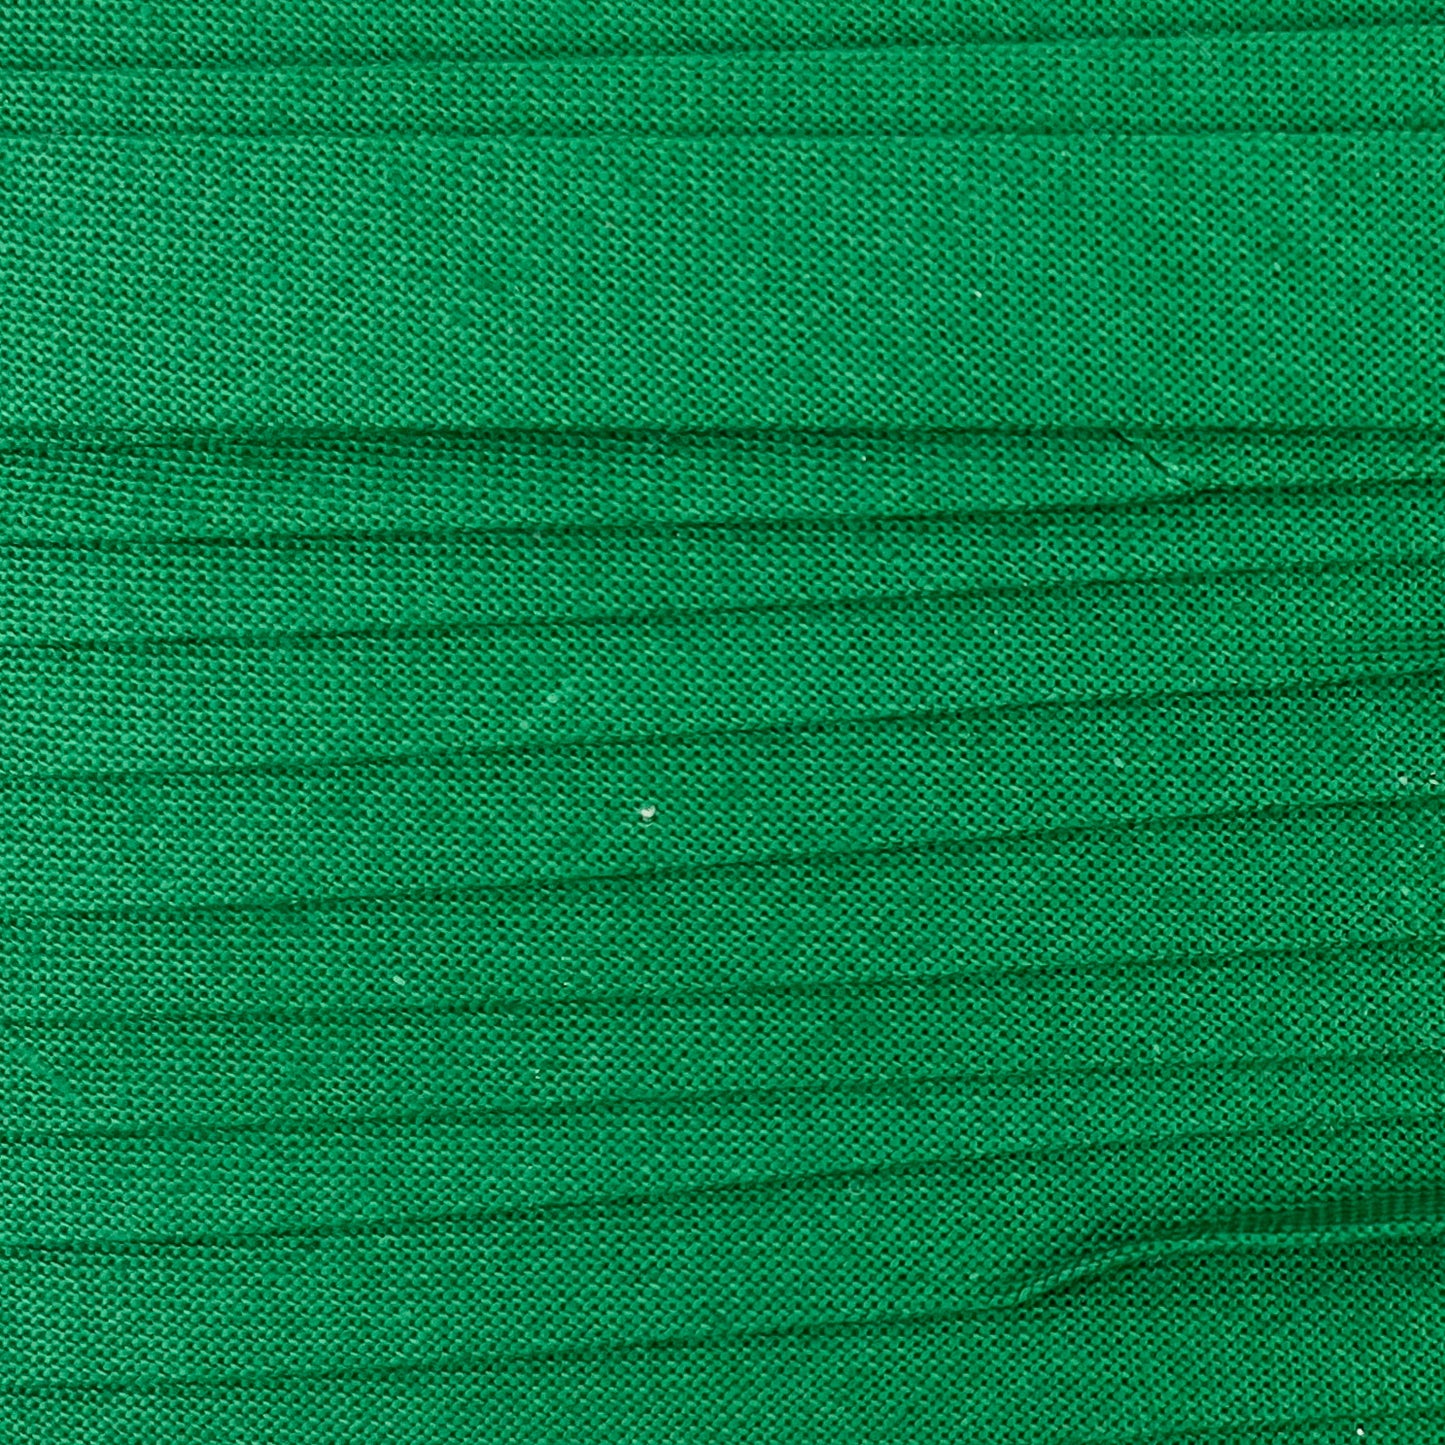 Sewing Gem - 12mm Bias Binding - Single Fold - 100% Cotton